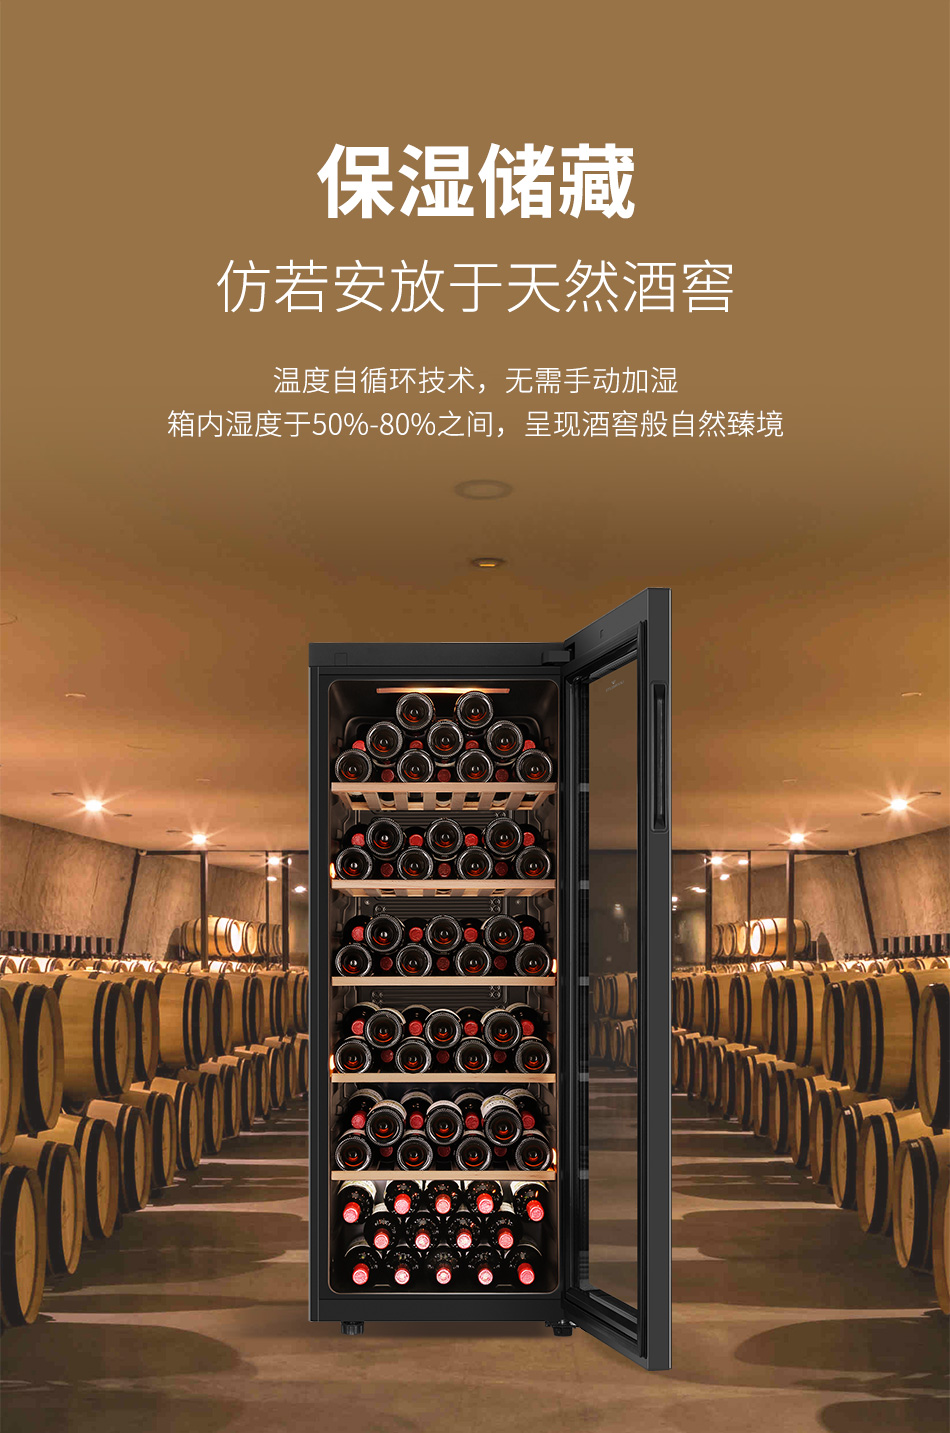 【套装D】智利干露麦卡斯20瓶套装 赠：价值4999元的拉维莱特智慧酒柜一台+红酒世界5年白金会籍